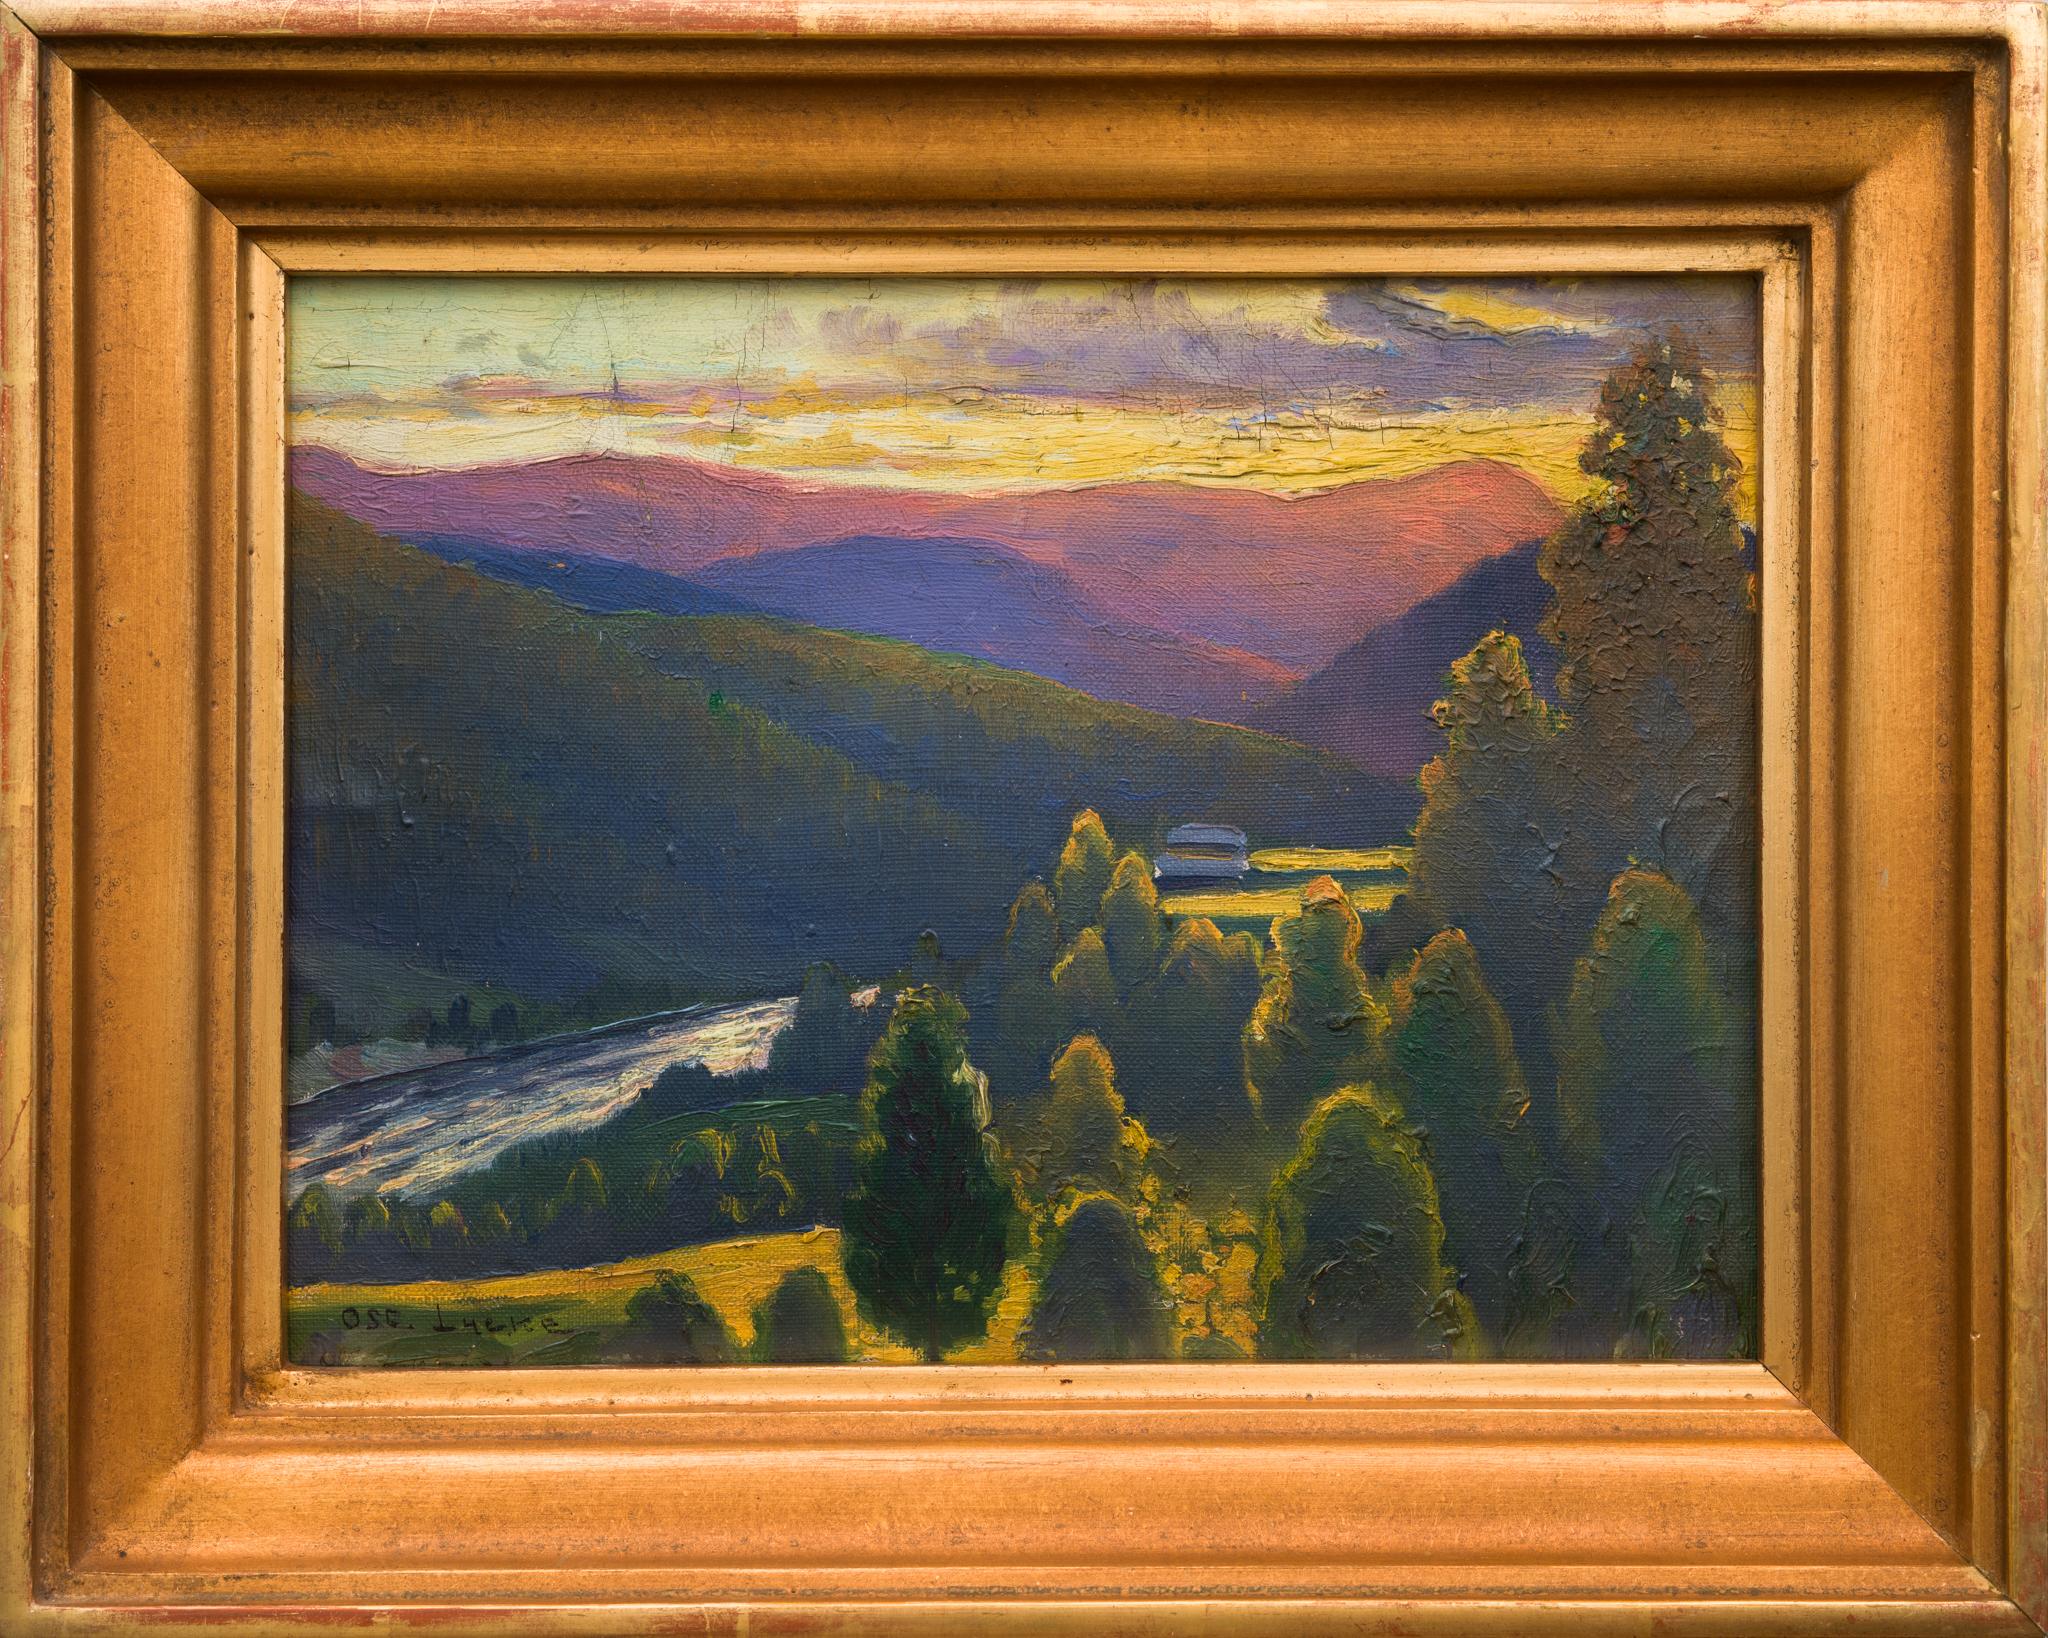 Peinture de paysage appelée « A Norrland Valley » ( Vallée du Norrland) de l'artiste suédois Oscar Lycke